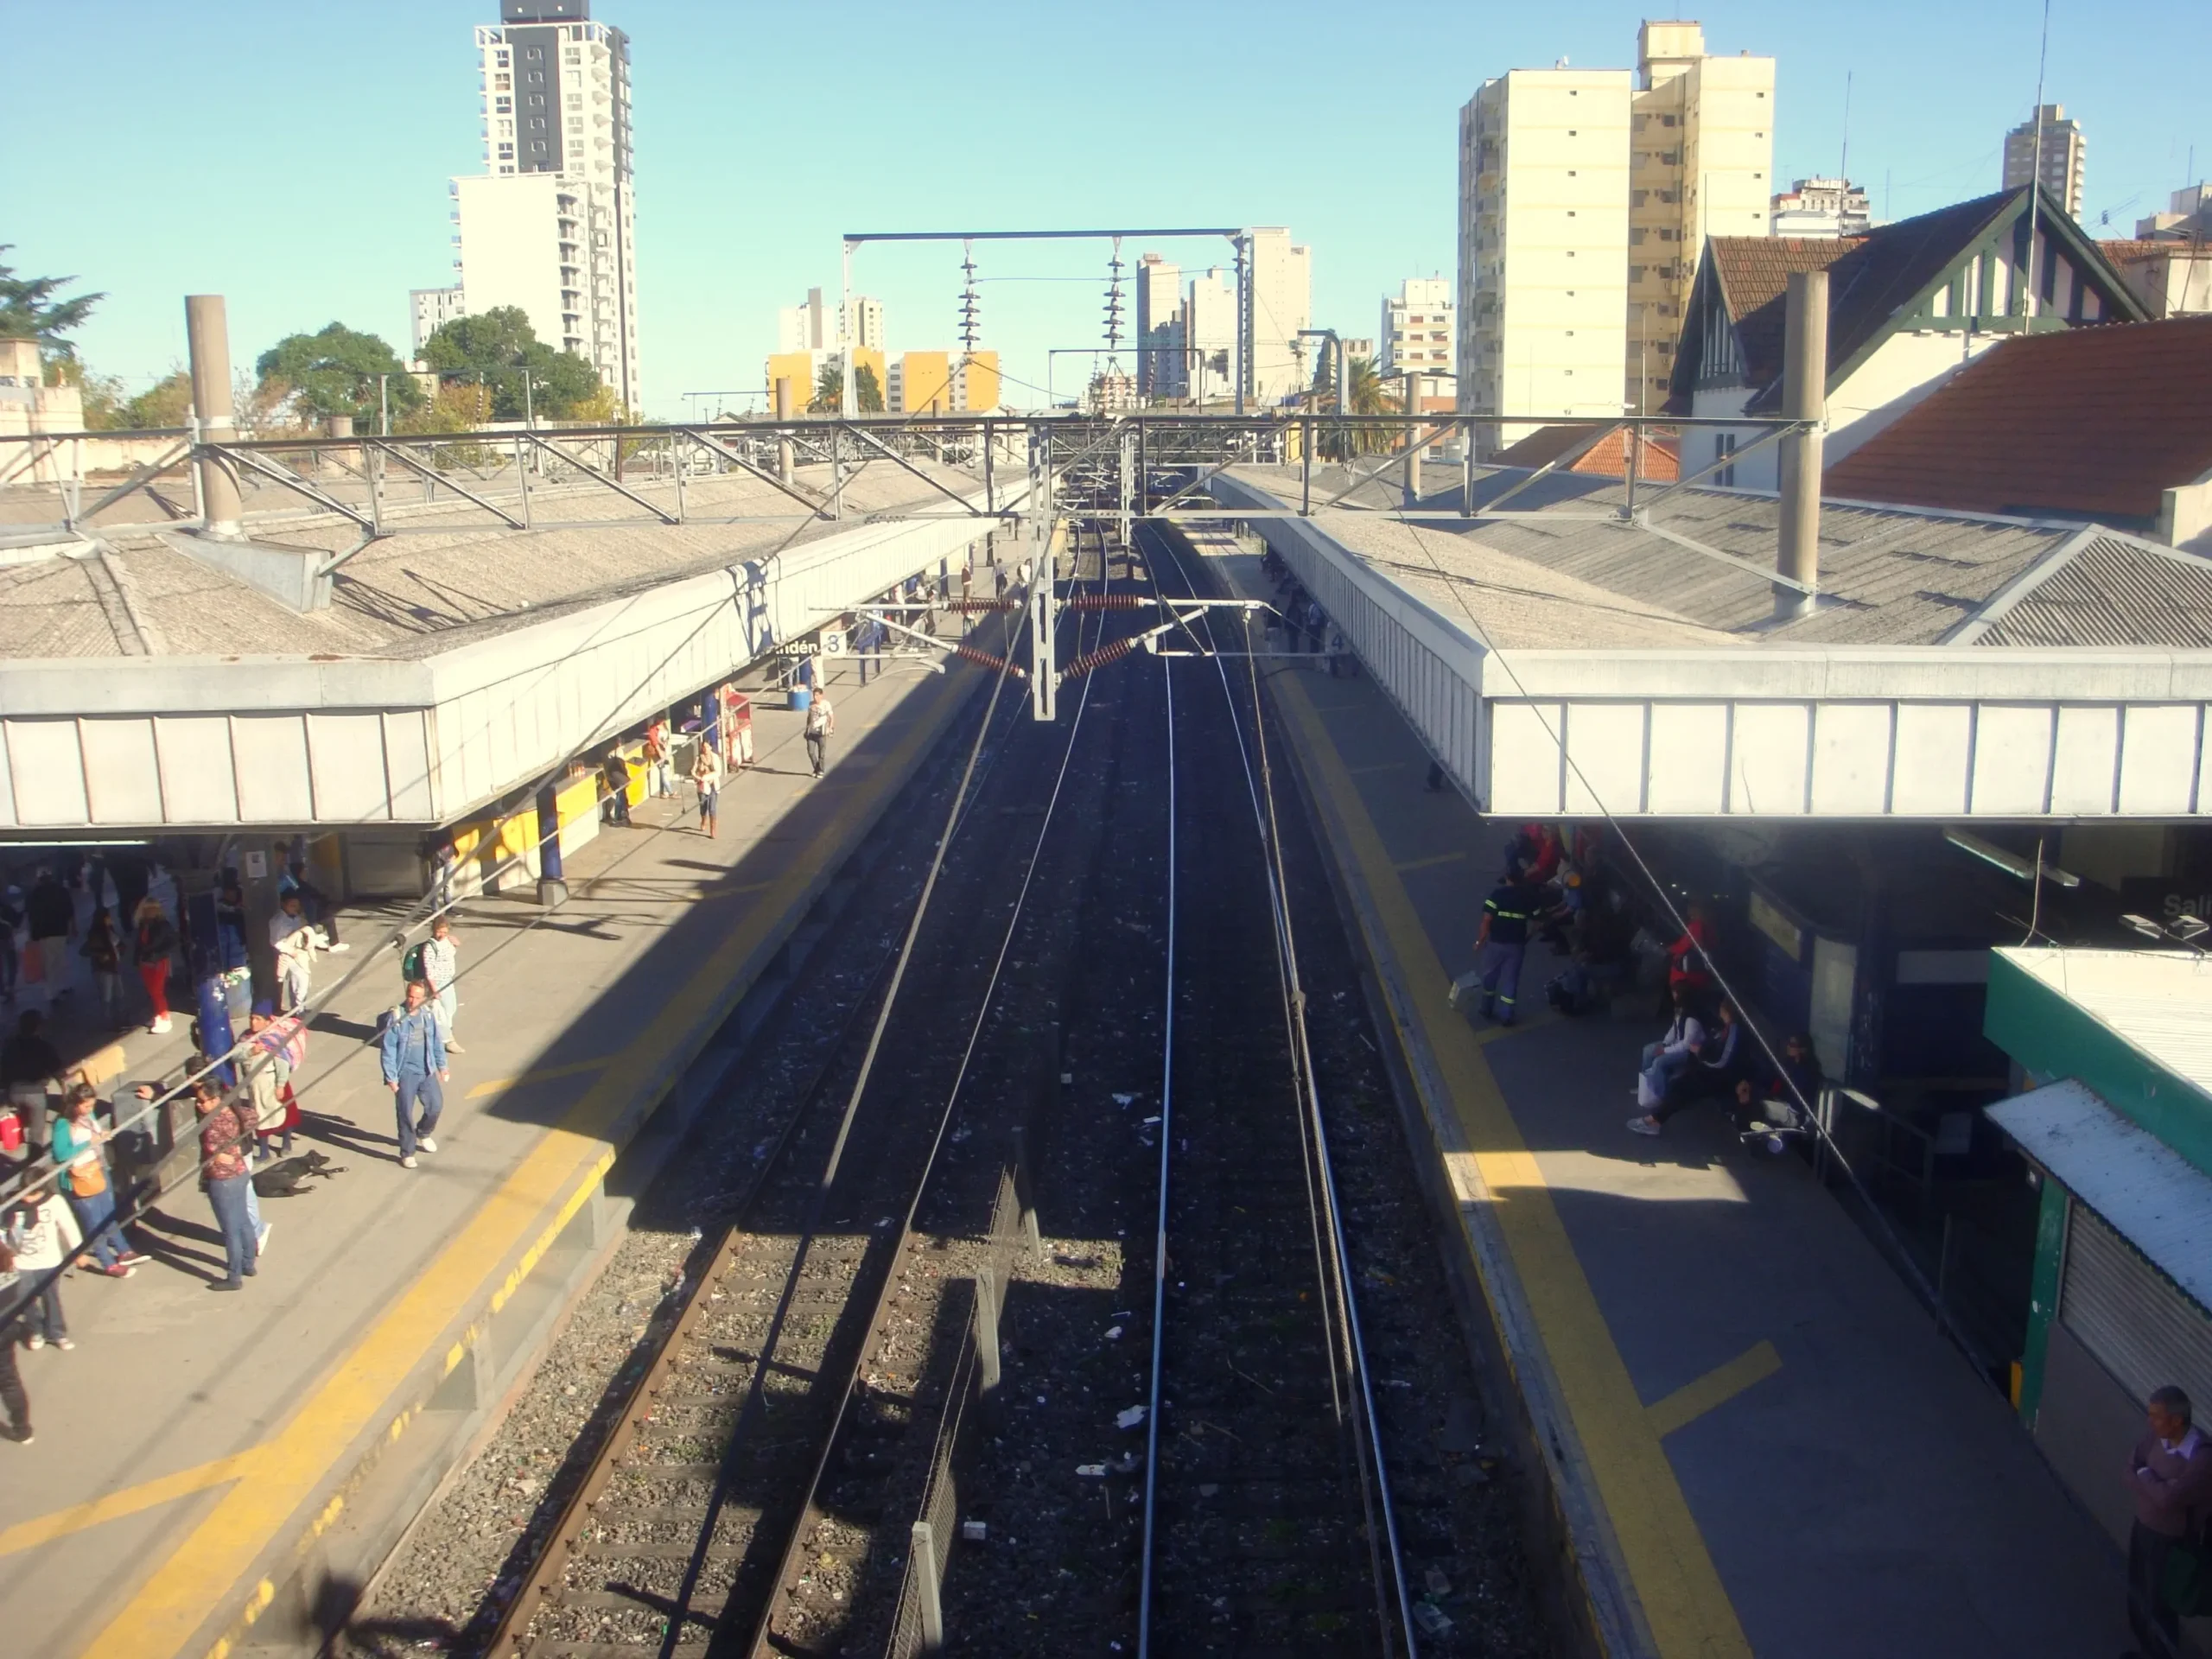 estacion ferrocarril lomas de zamora - Cómo se llama la estación de tren de Zamora